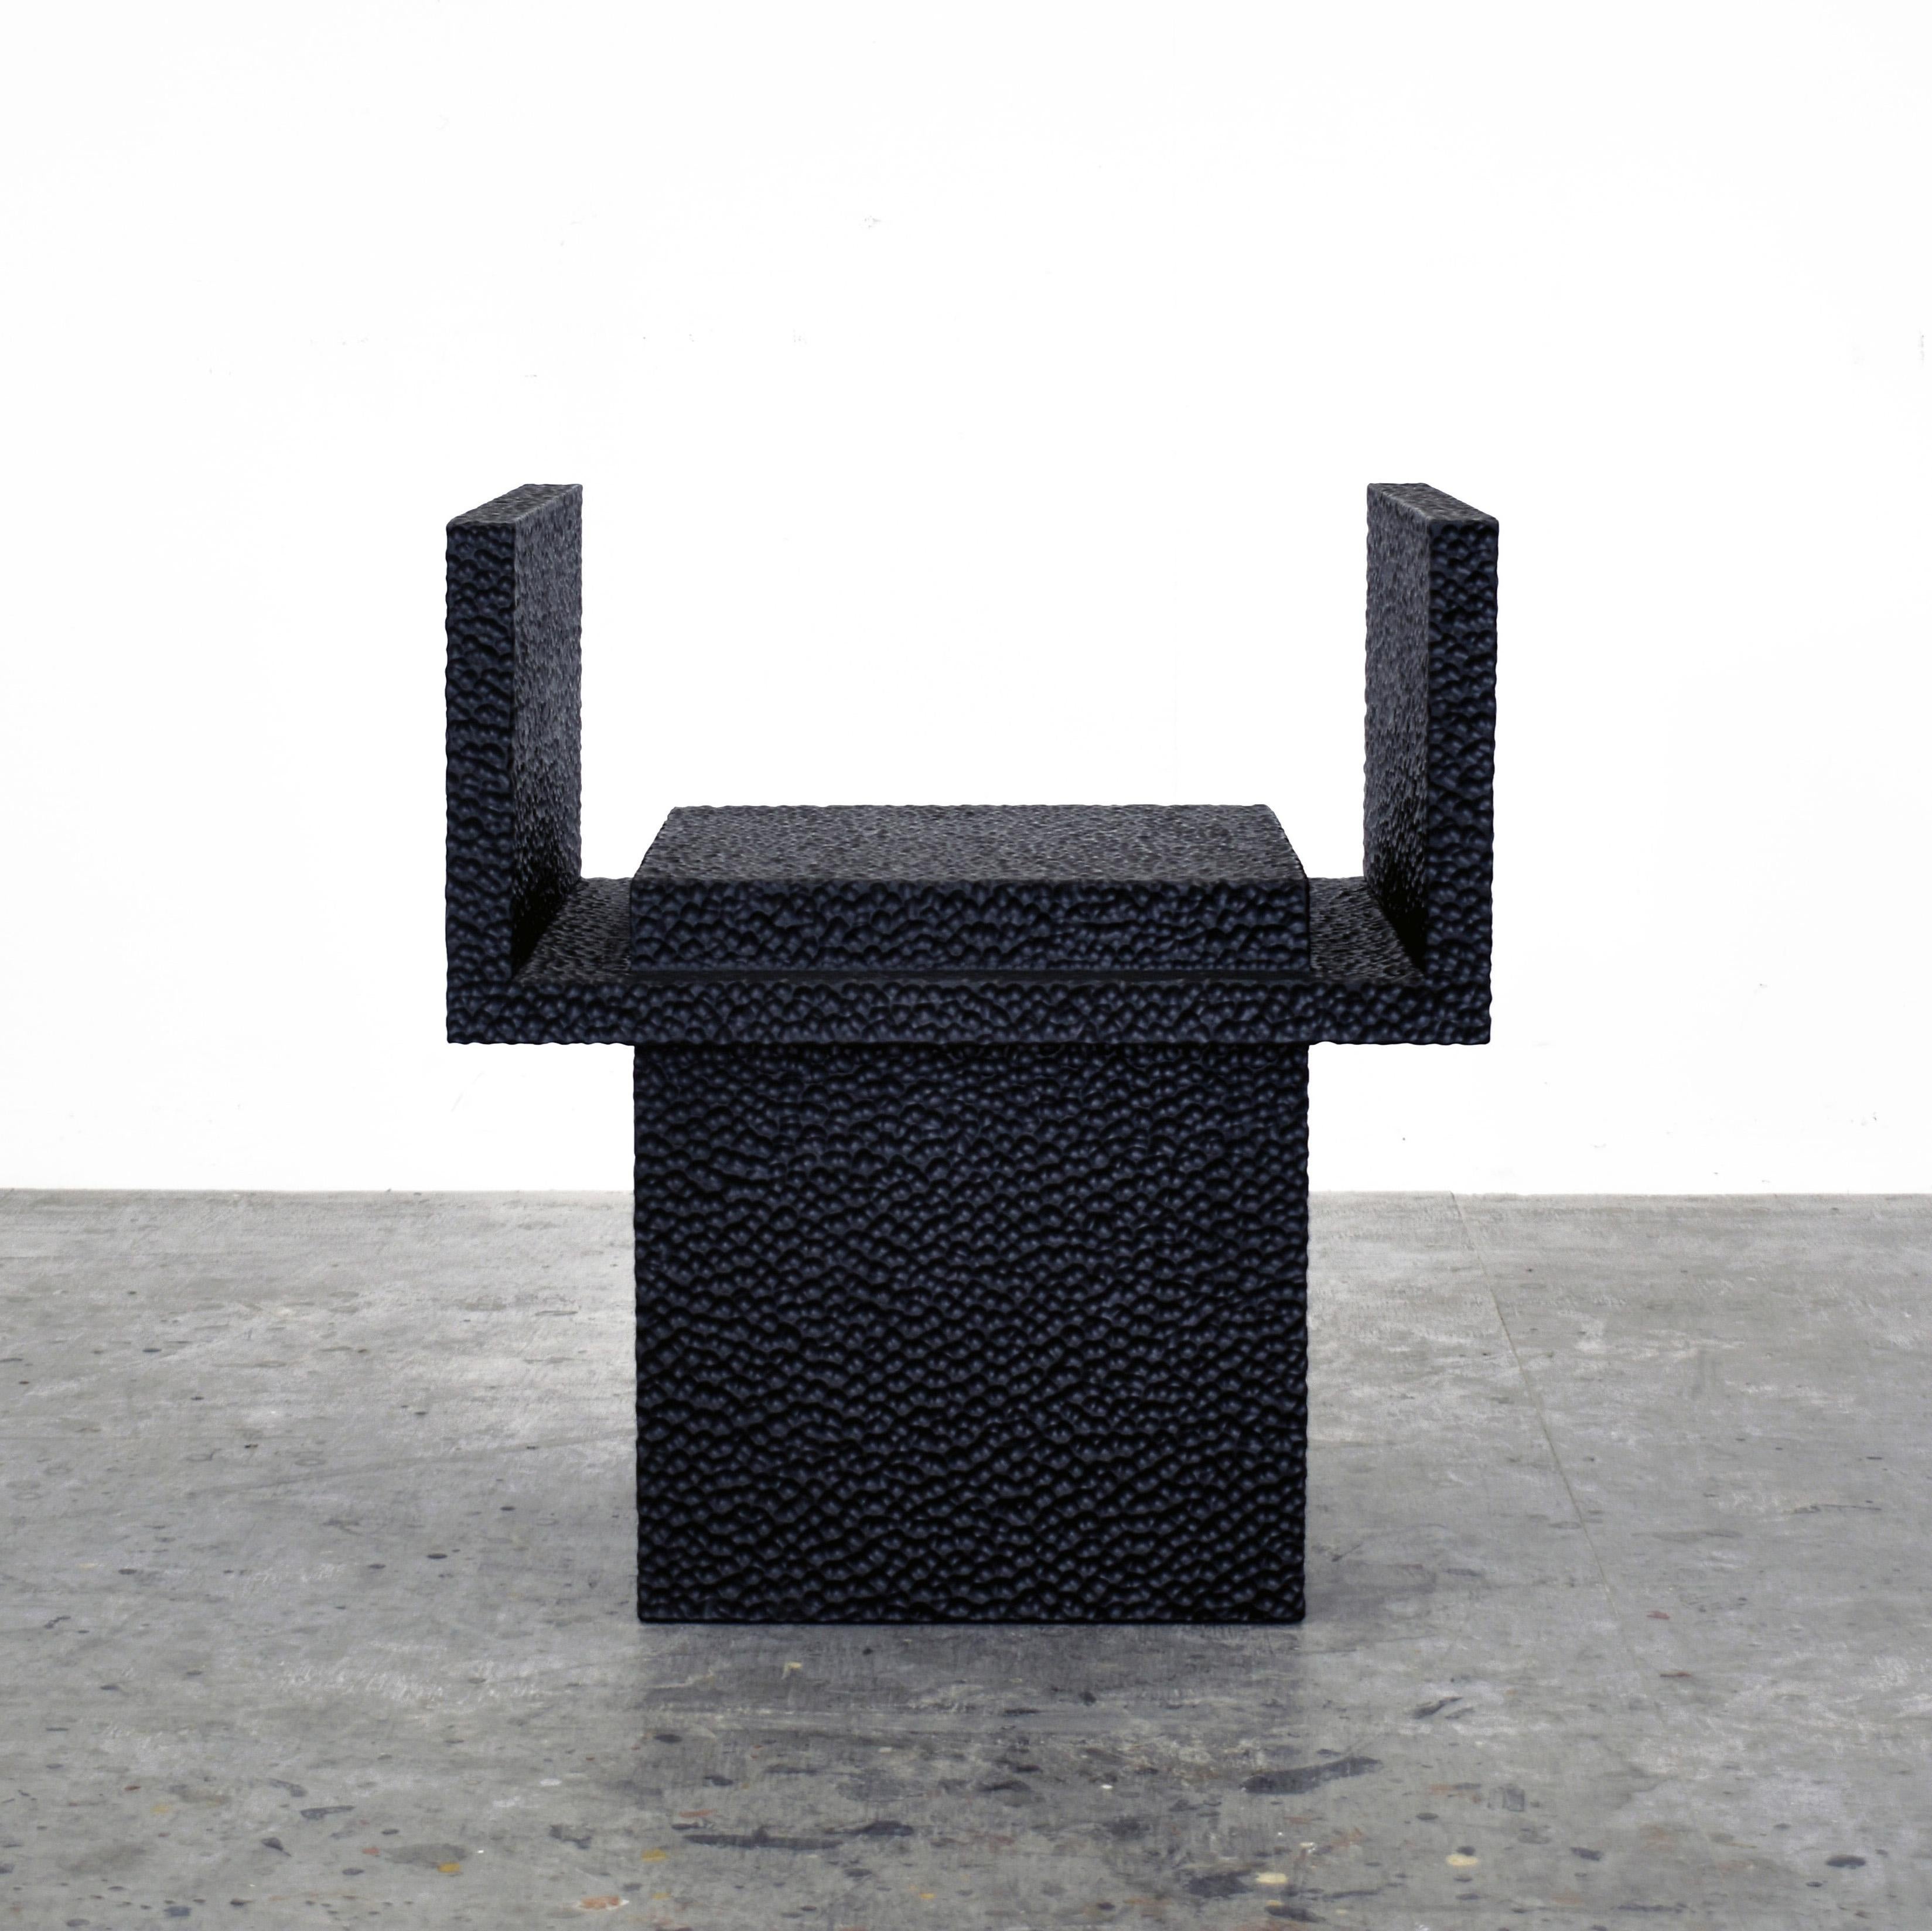 C4-Stuhl von John Eric Byers
Abmessungen: 63,5 x 58,5 x 45,7 cm
MATERIALIEN: Geschnitztes geschwärztes Ahornholz

Alle Werke werden individuell auf Bestellung handgefertigt.

John Eric Byers schafft geometrisch inspirierte Stücke, die